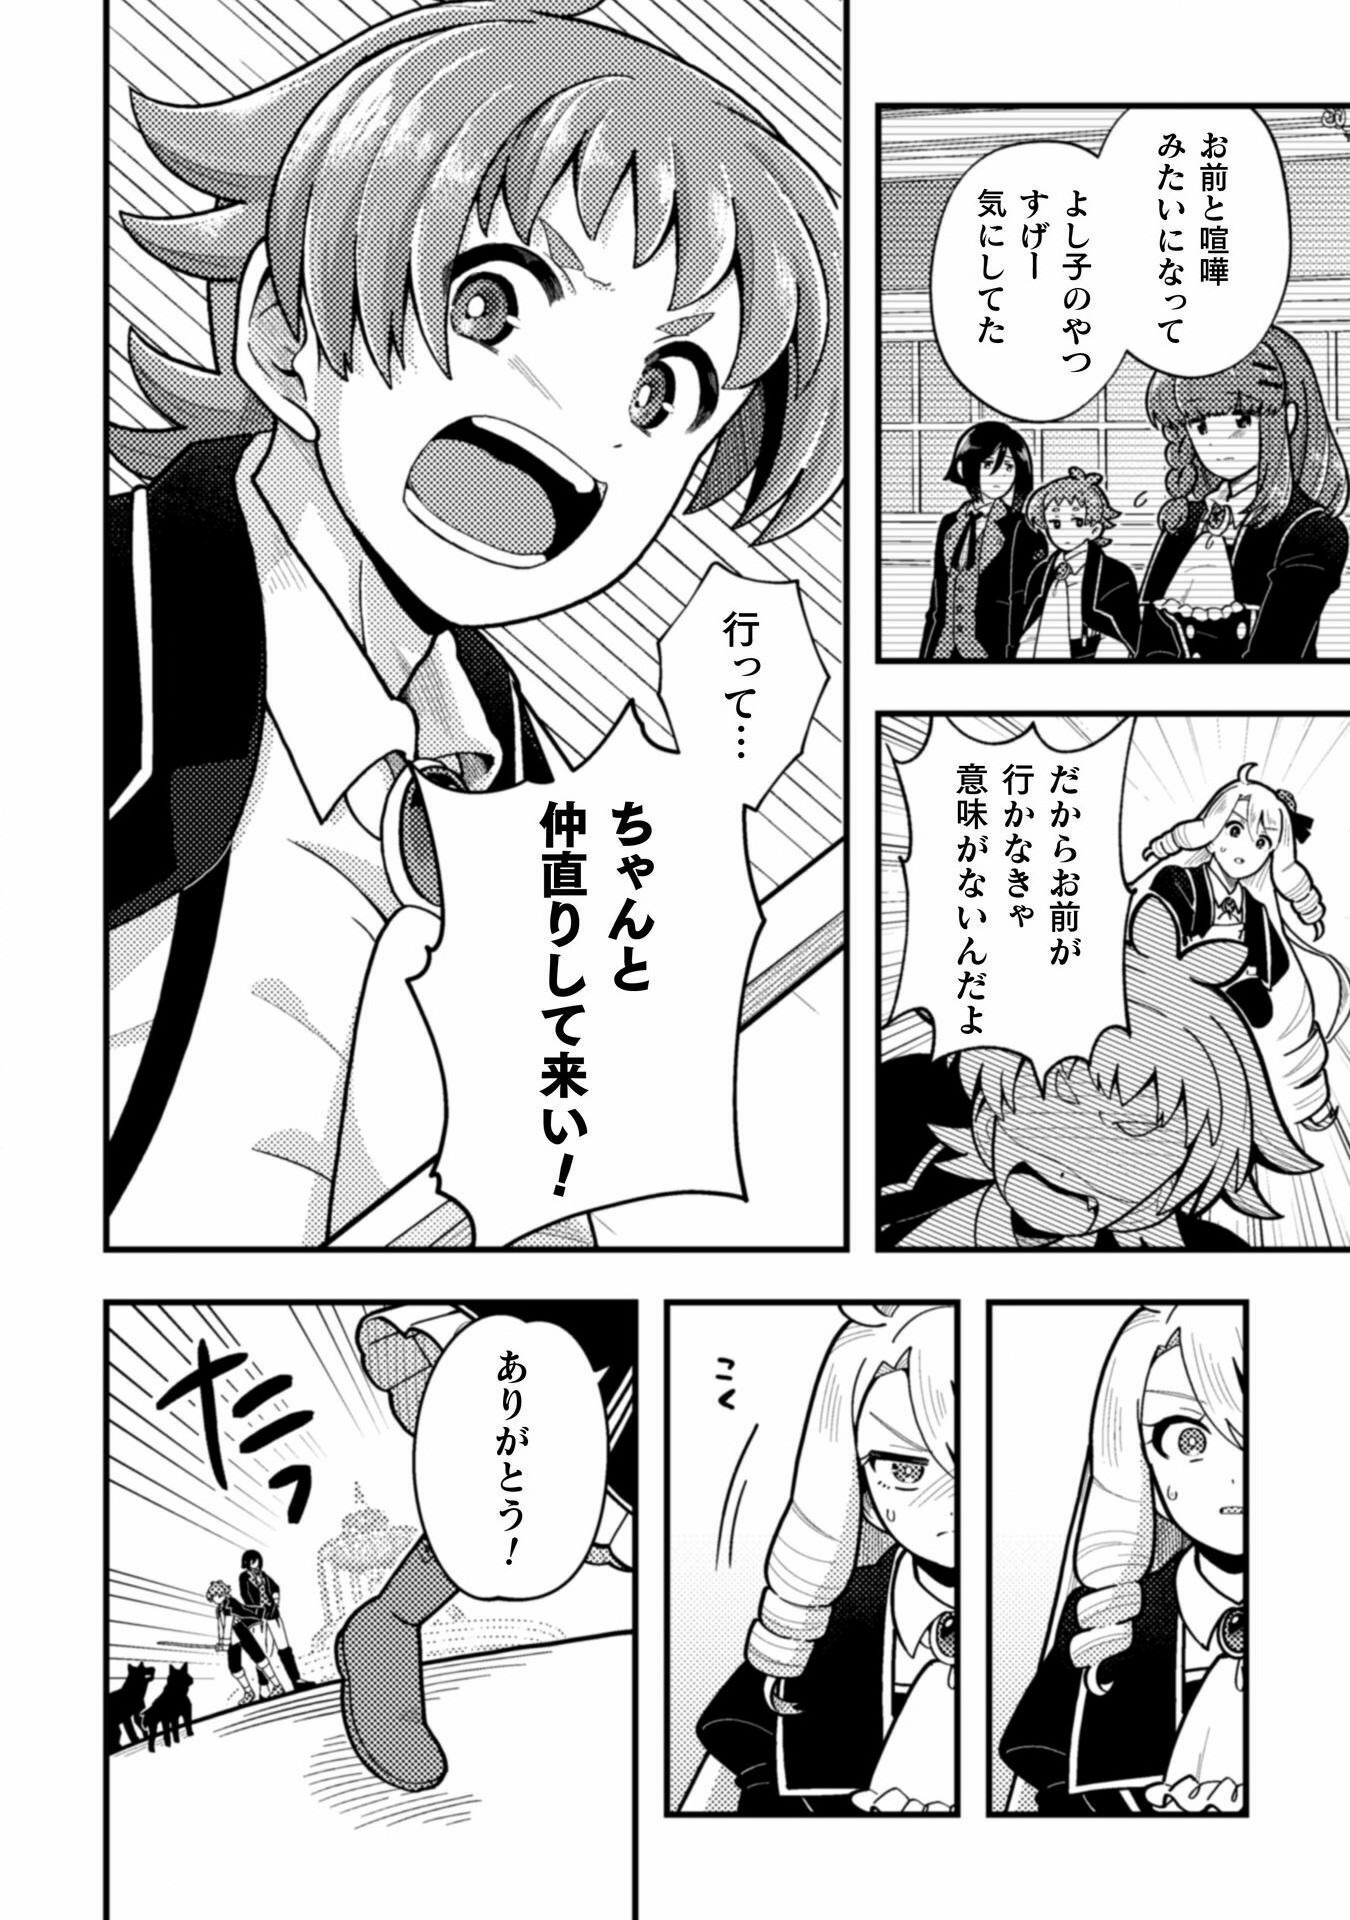 Otome Game no Akuyaku Reijou ni Tensei shitakedo Follower ga Fukyoushiteta Chisiki shikanai - Chapter 22 - Page 14